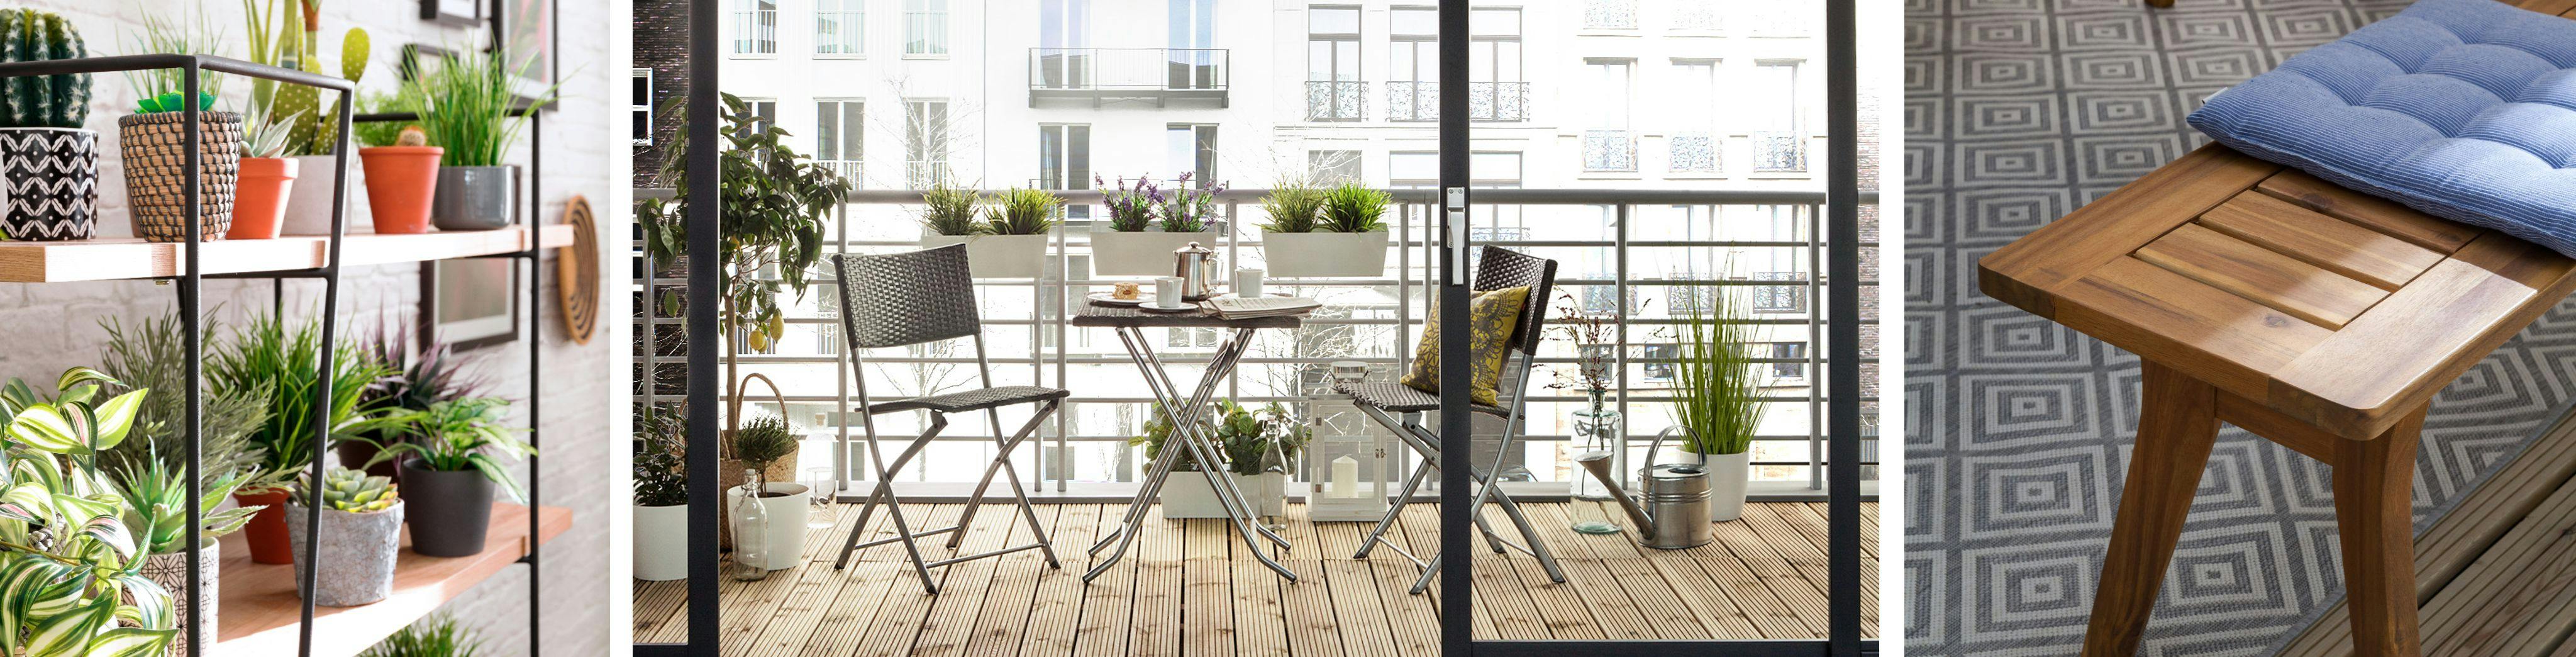 Décoration terrasse : 18 inspirations pour votre extérieur